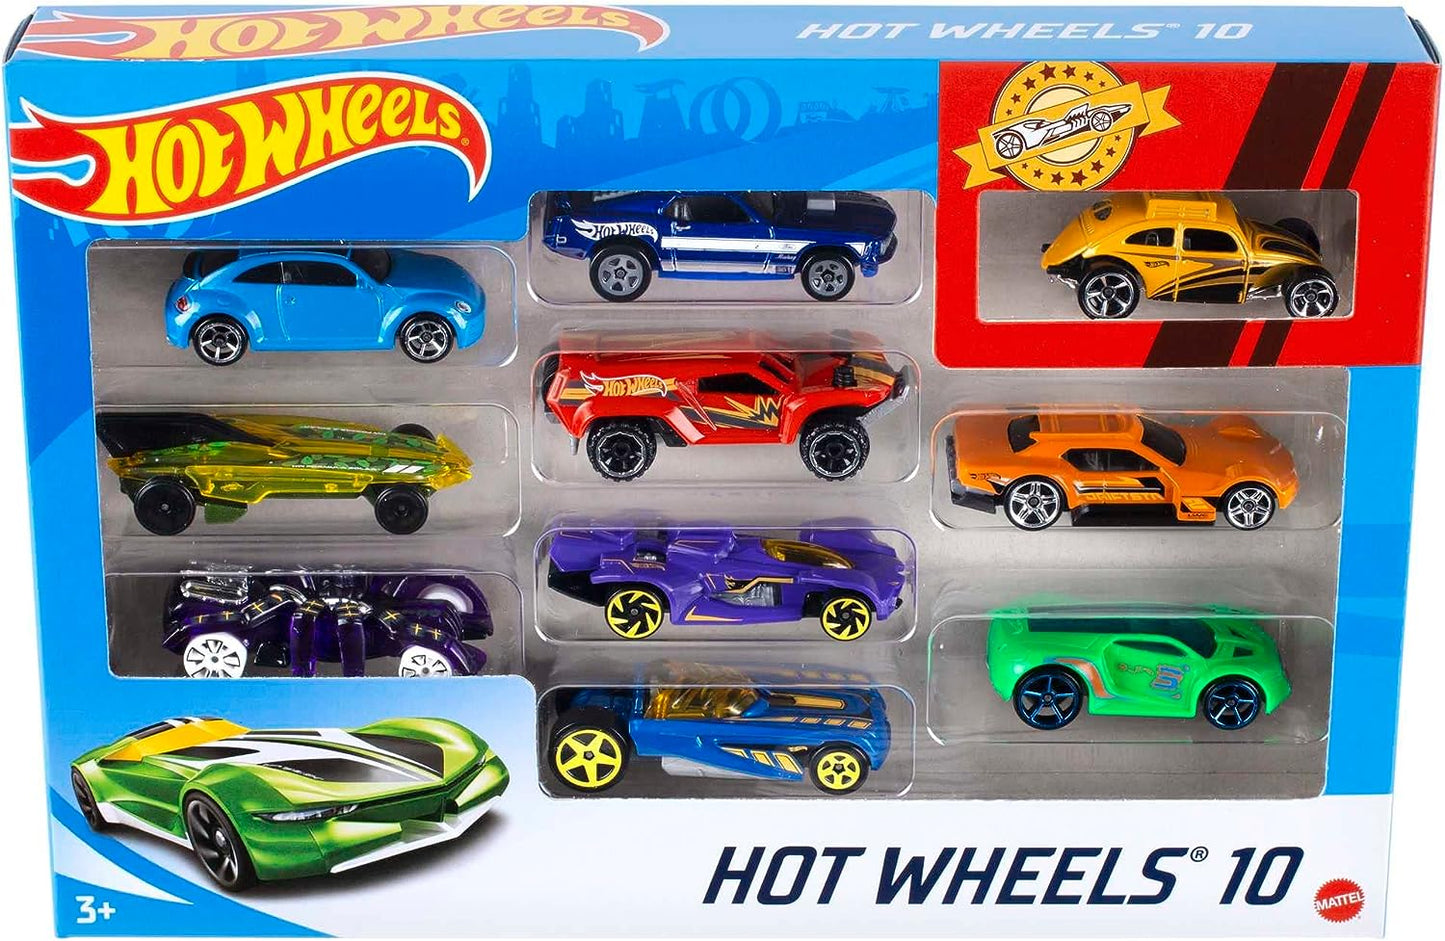 Hot Wheels Conjunto de 10 caminhões e carros de brinquedo em escala 1:64 para crianças e colecionadores, os estilos podem variar, 54886